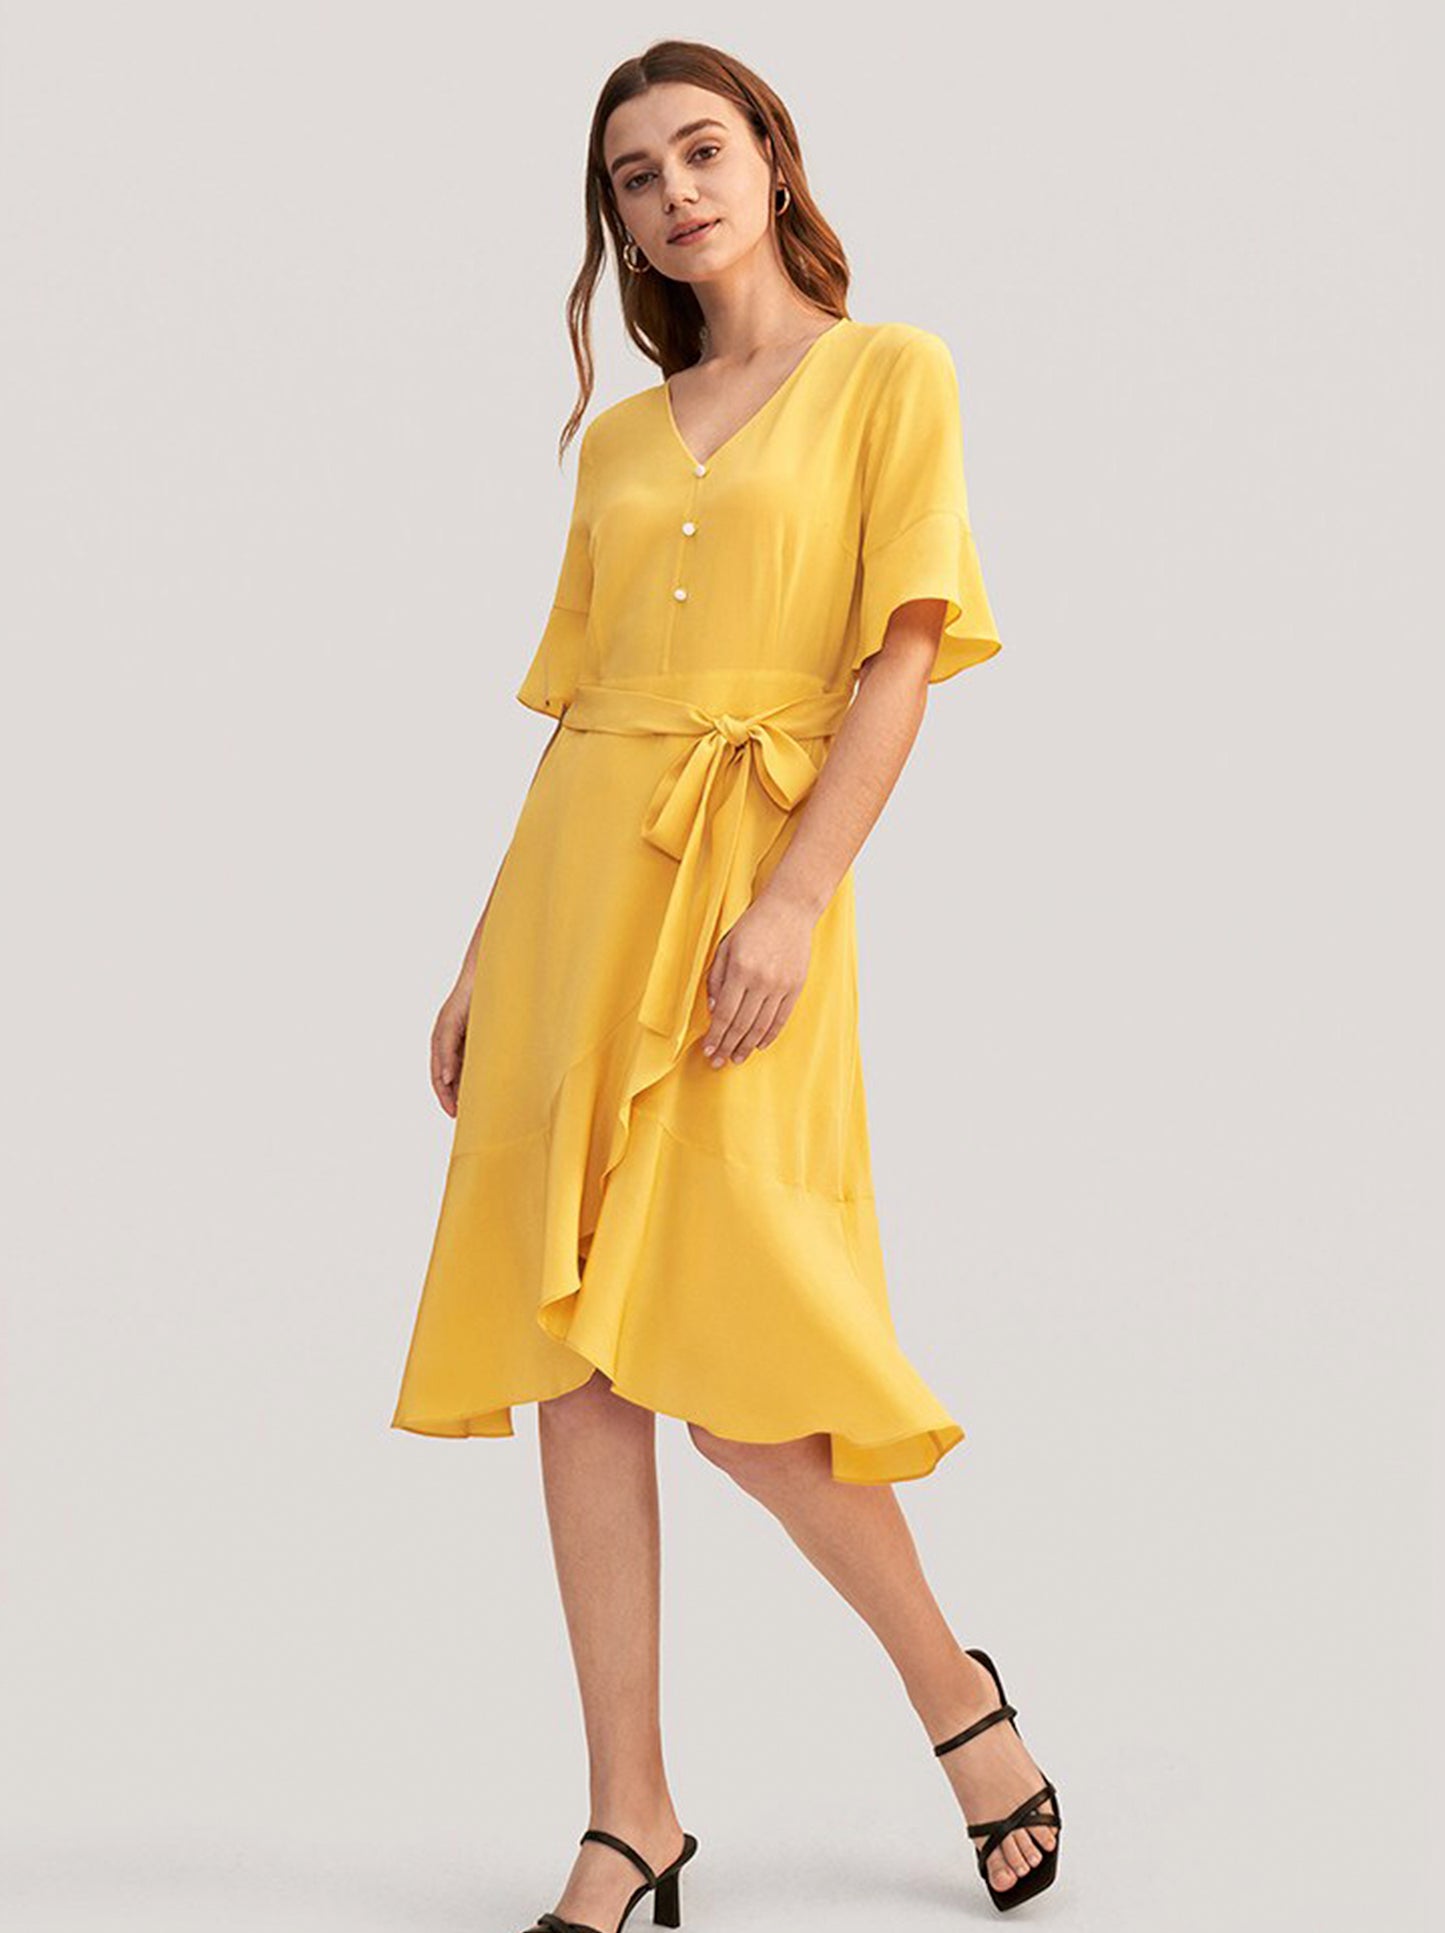 Summer dreams : LILYSILK Summer Dress (100% Silk)